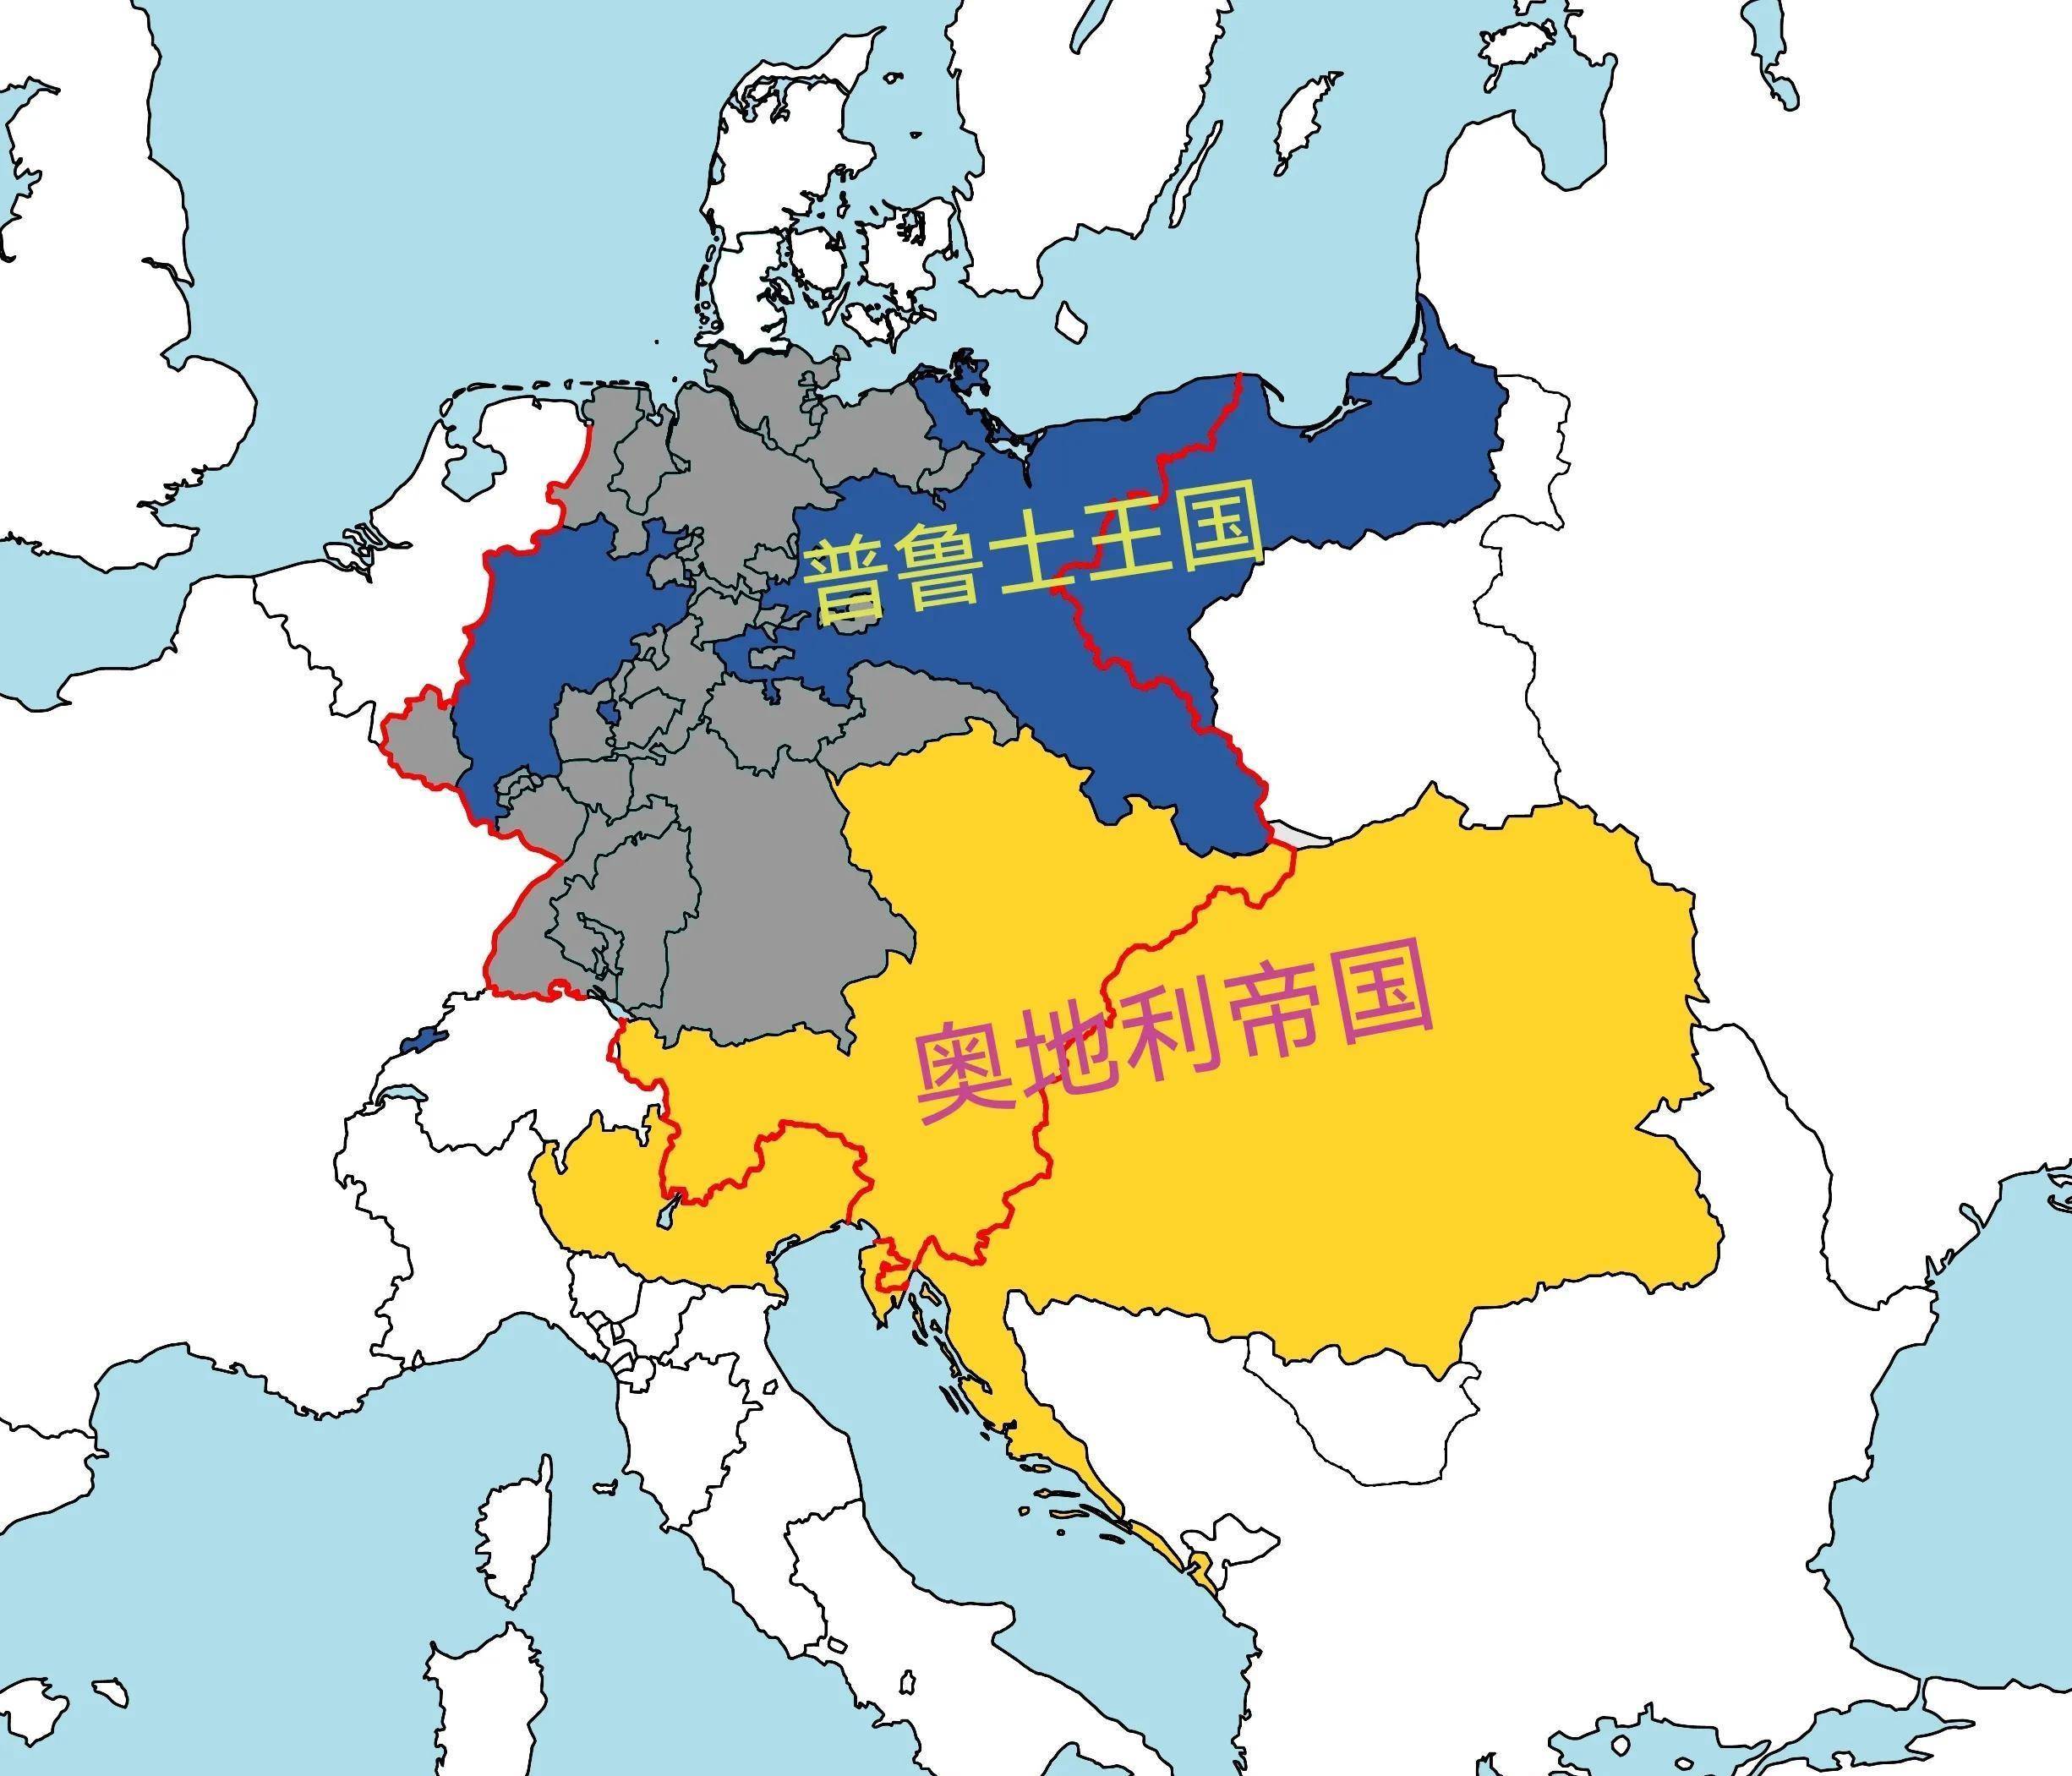 普鲁士统一德国,为何把奥地利除在外?